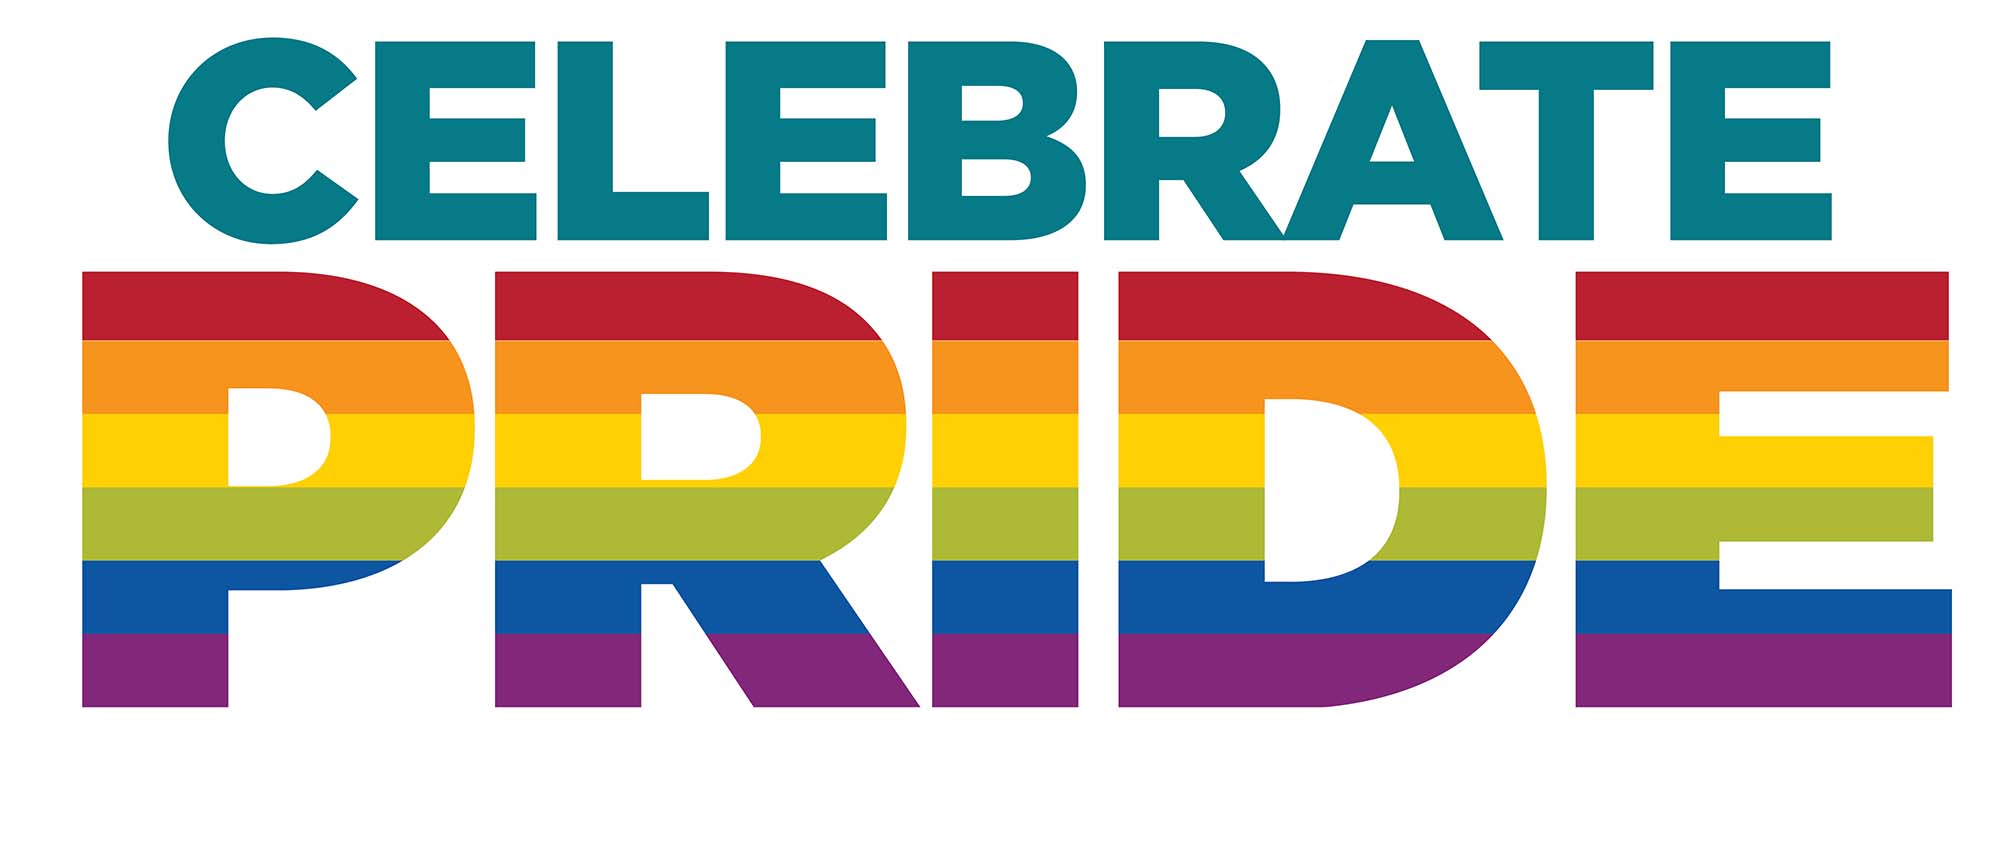 Hình ảnh UNM có nội dung "Celebrate Pride" với niềm tự hào được tô màu như cầu vồng